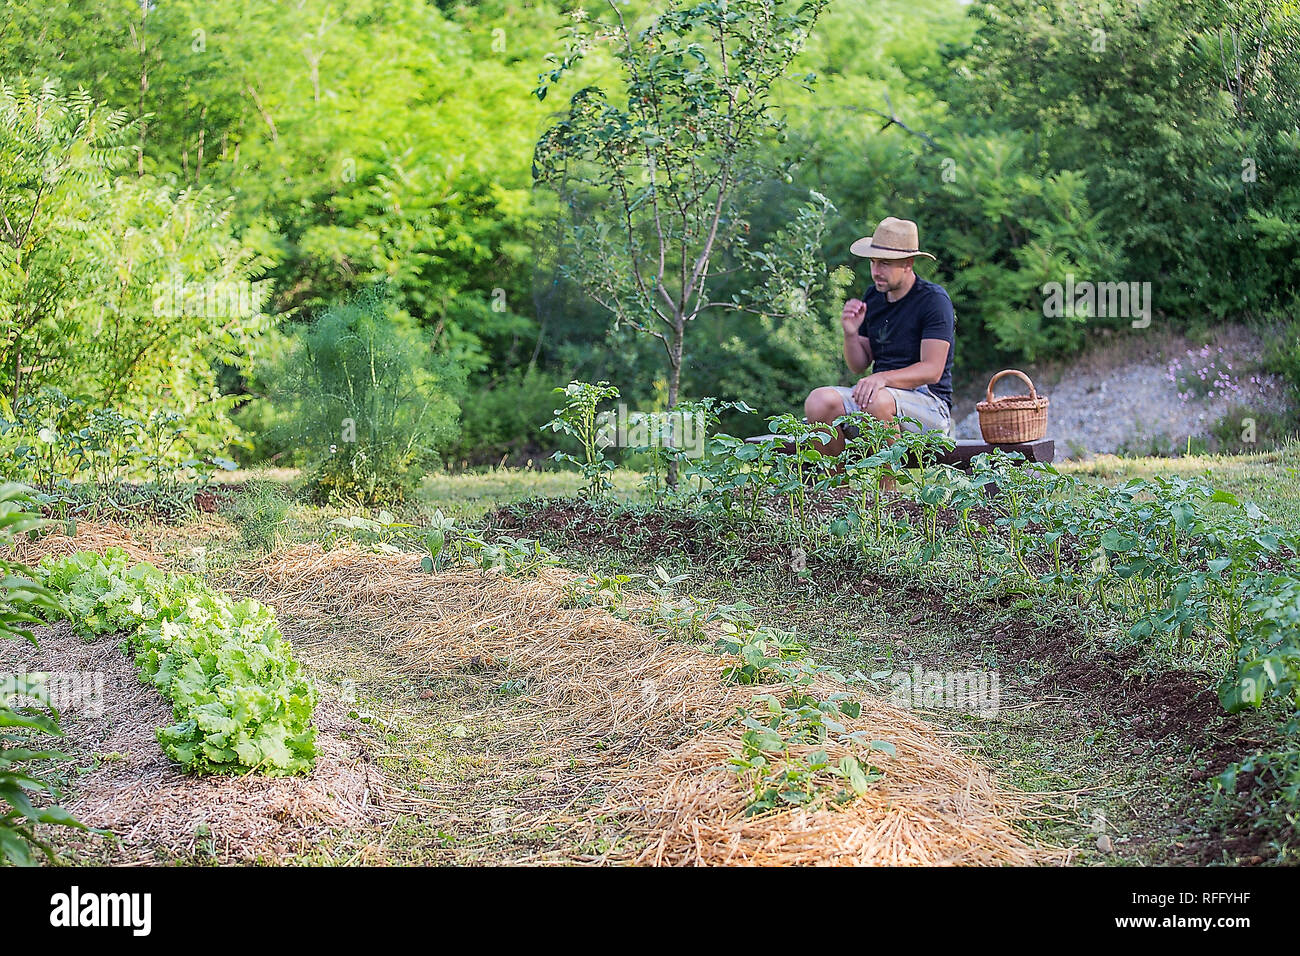 Hombre joven con sombrero trabaja en un jardín de vegetales cultivados en casa Foto de stock